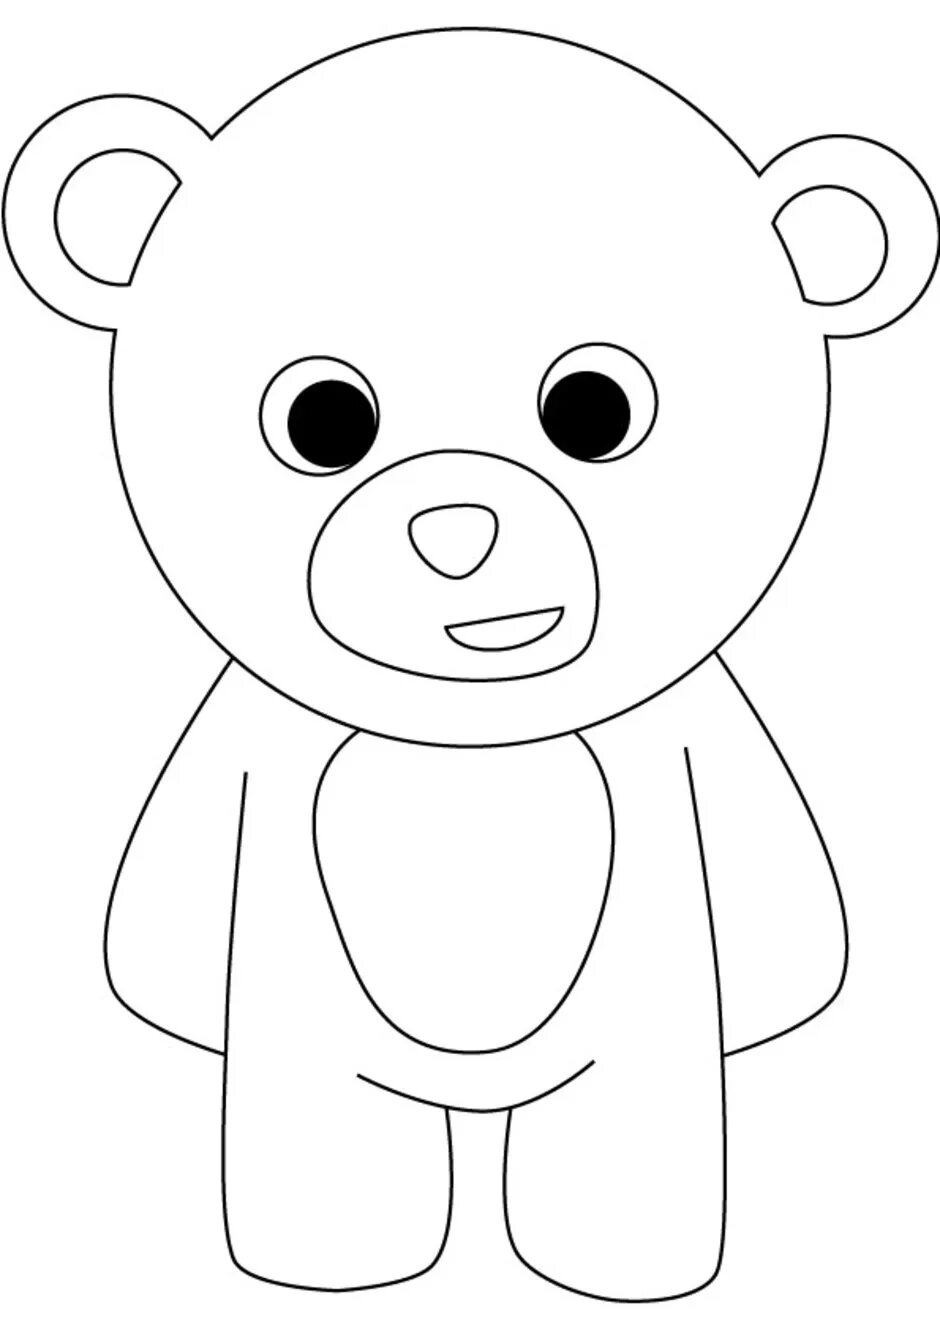 Раскраска медведь для детей 2 3 лет. Раскраска. Медвежонок. Мишка раскраска для малышей. Медведь раскраска для детей. Медвежонок раскраска для детей.